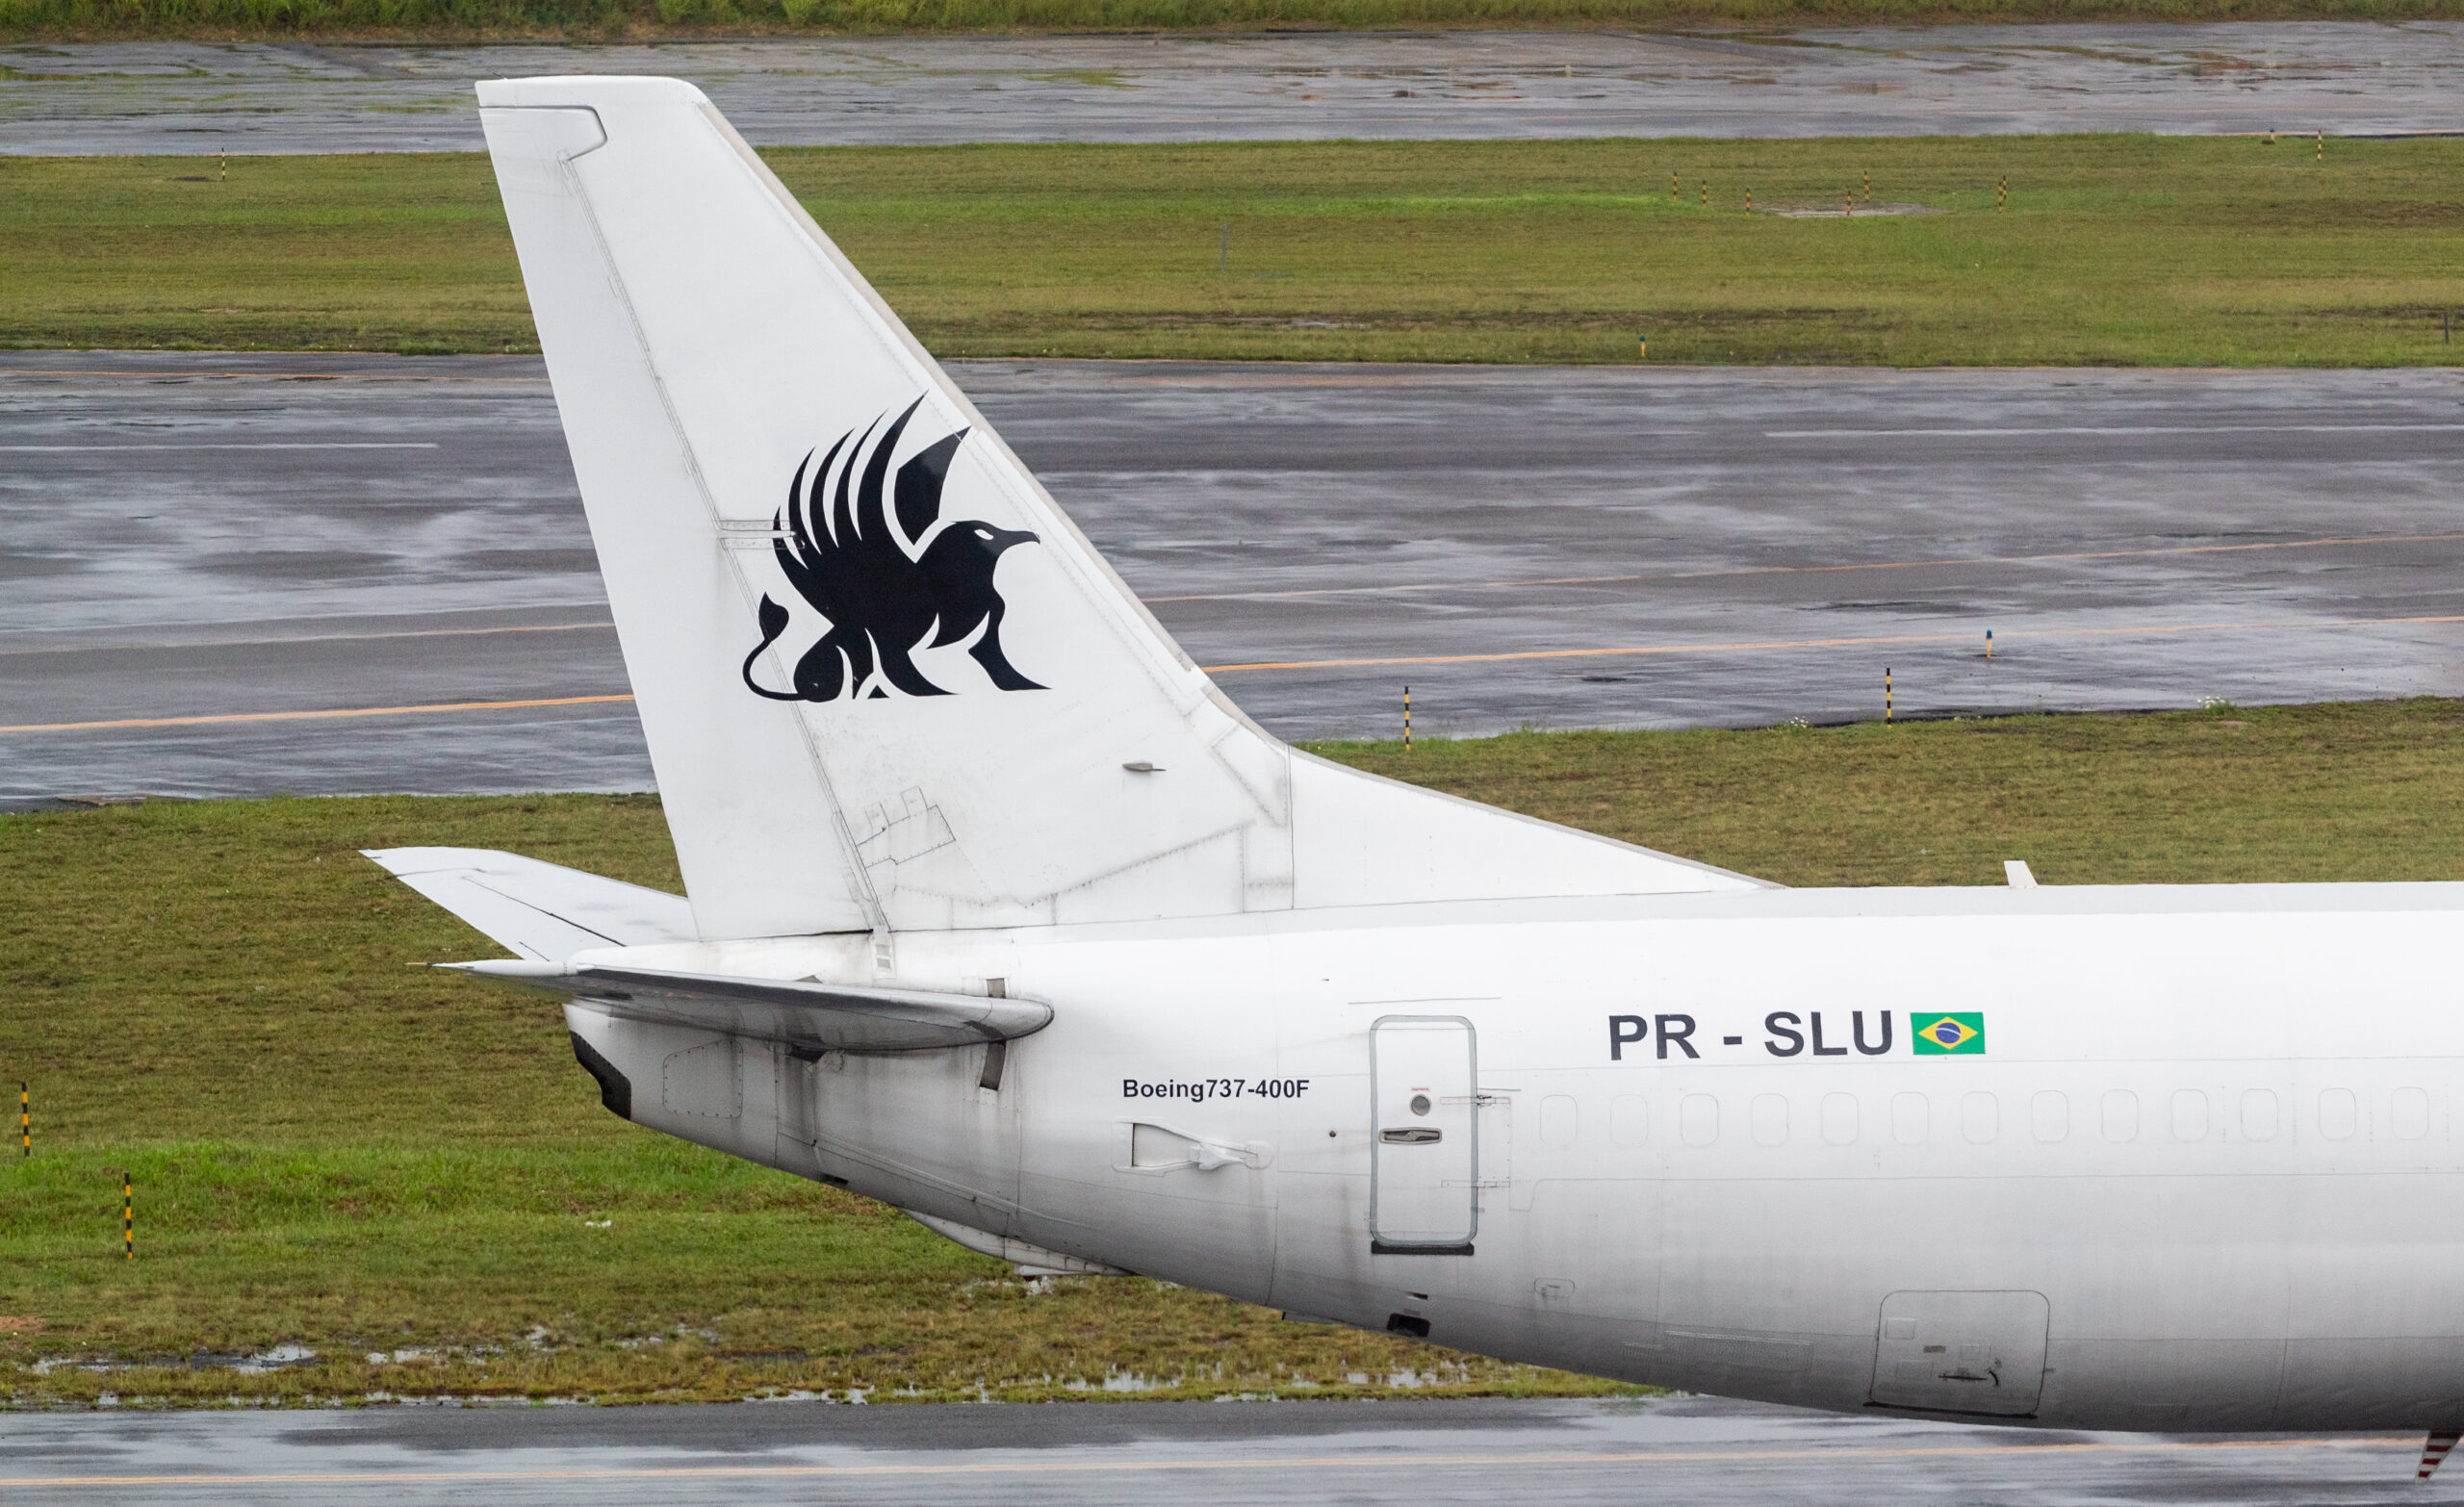 PR-SLU – Boeing 737-4Y0(SF) – Sideral - Blog do Spotter